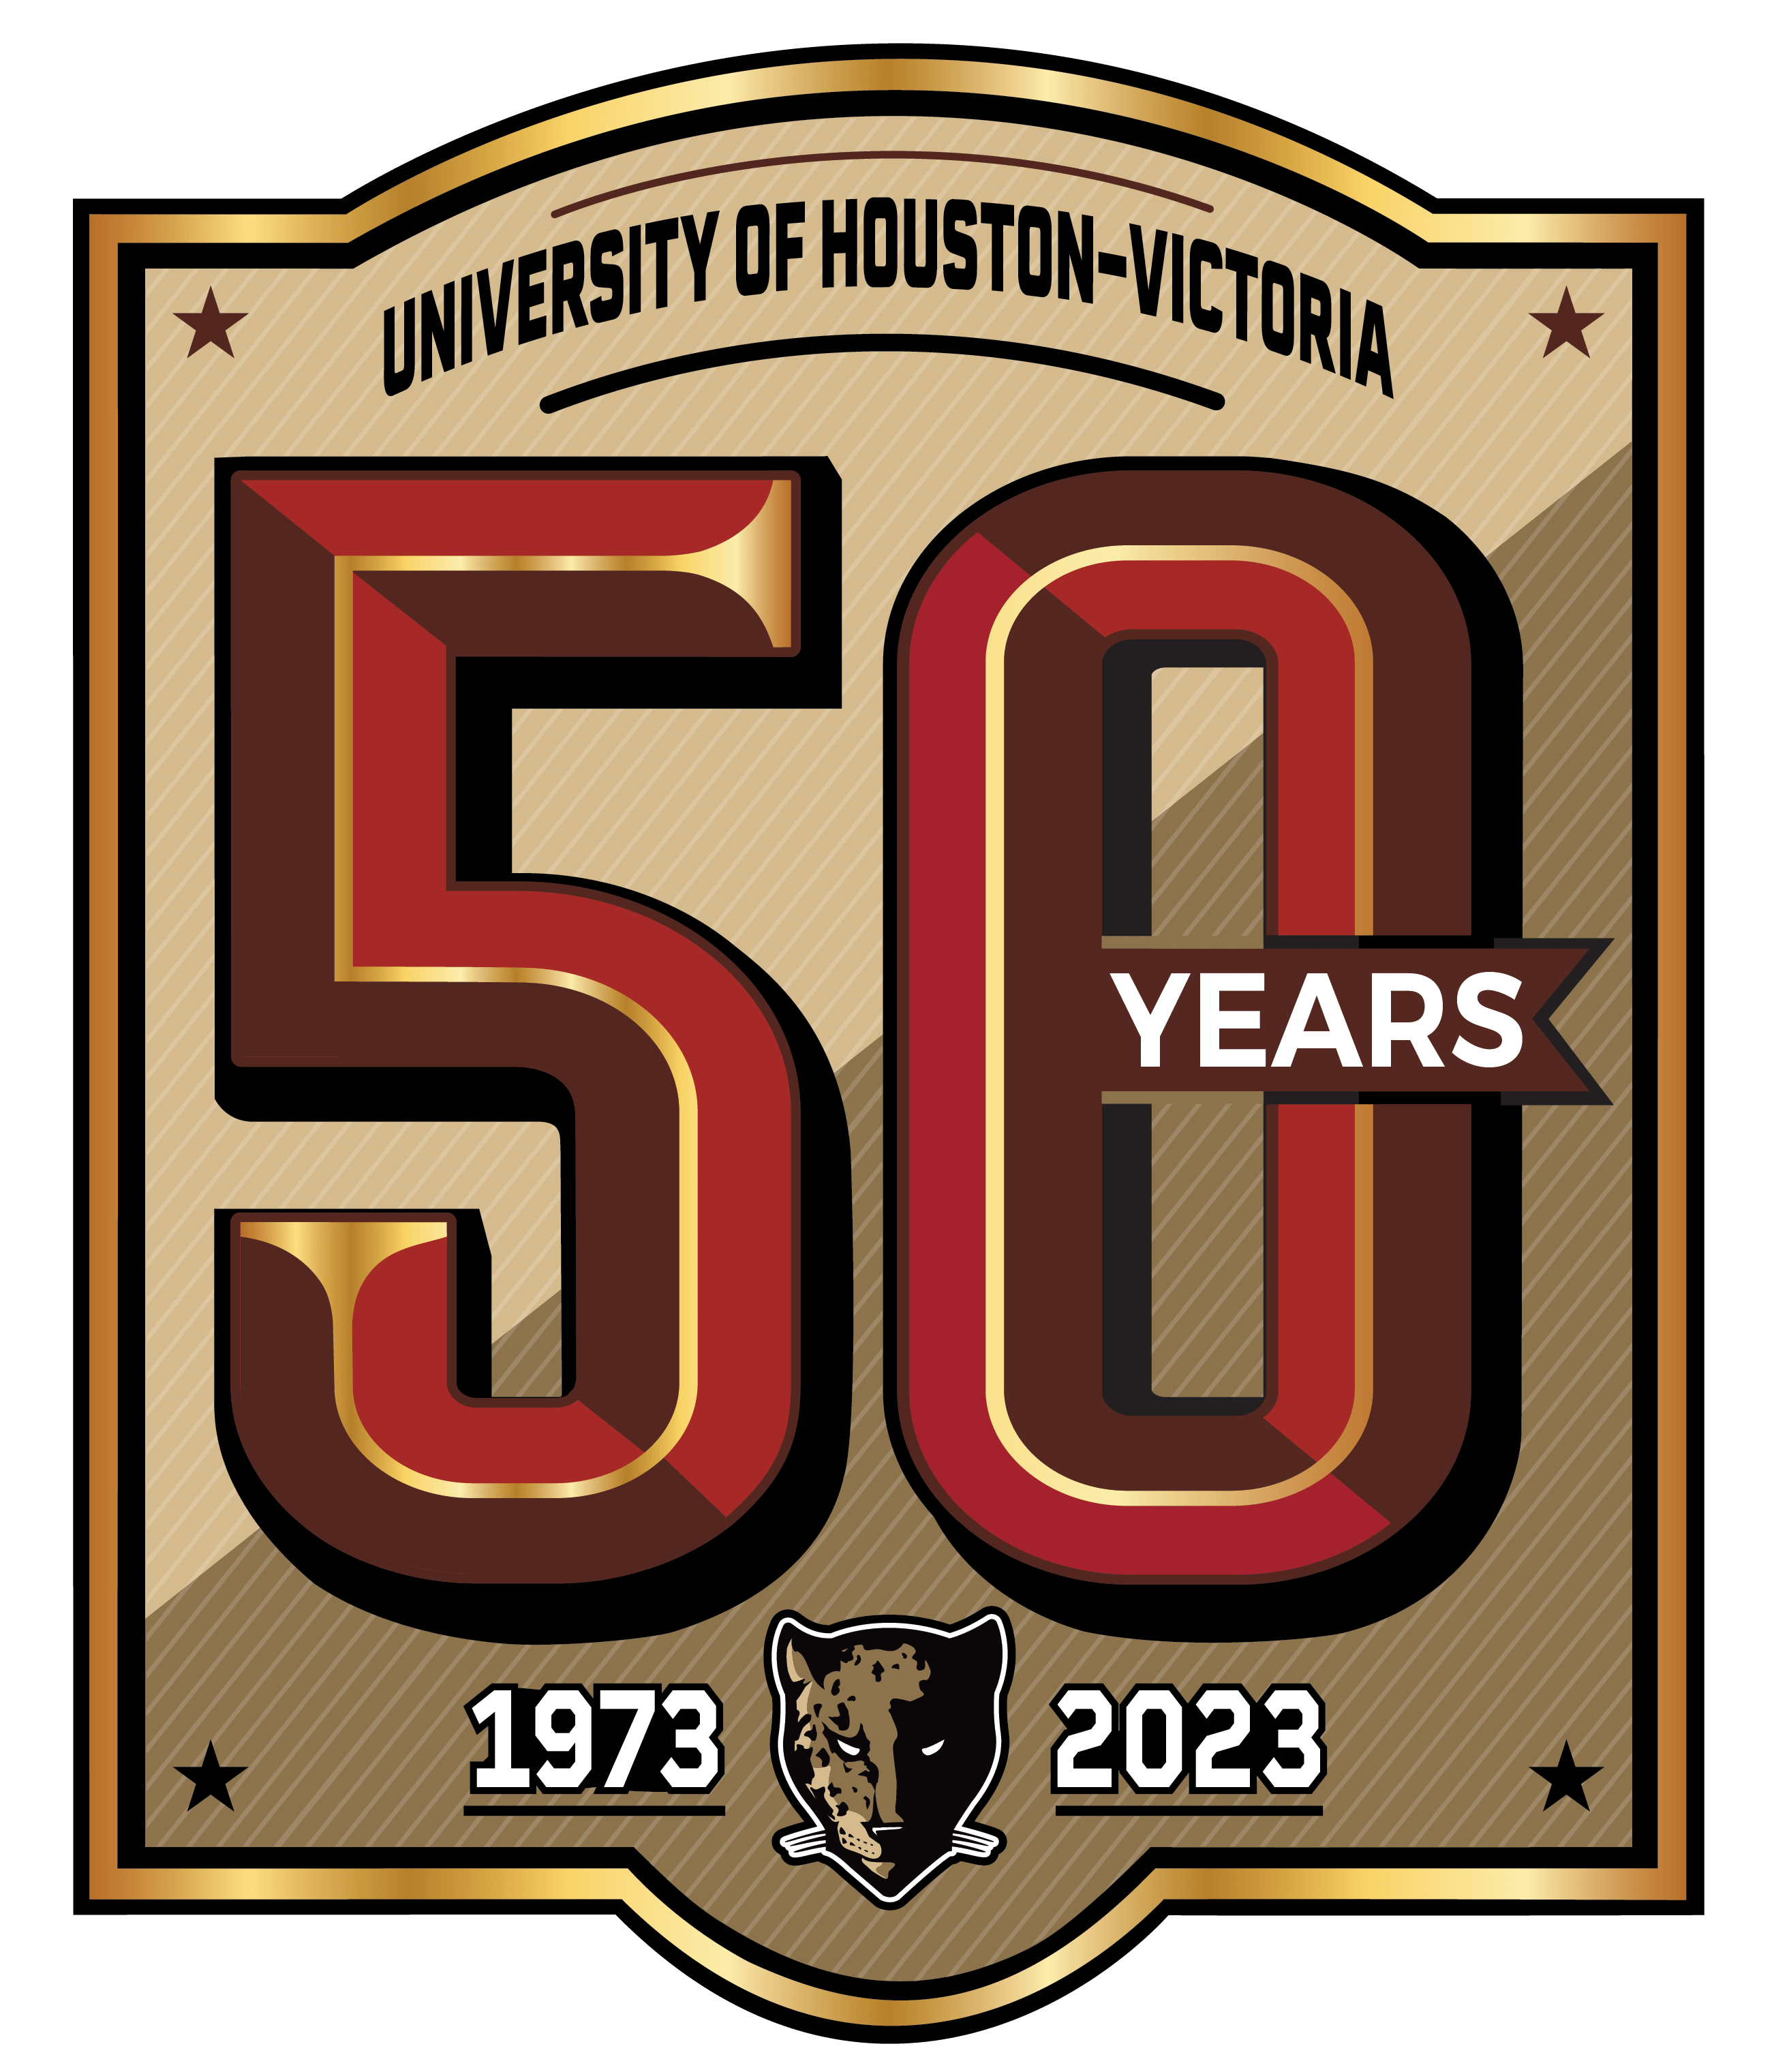 UHV 50 years: 1973-2023